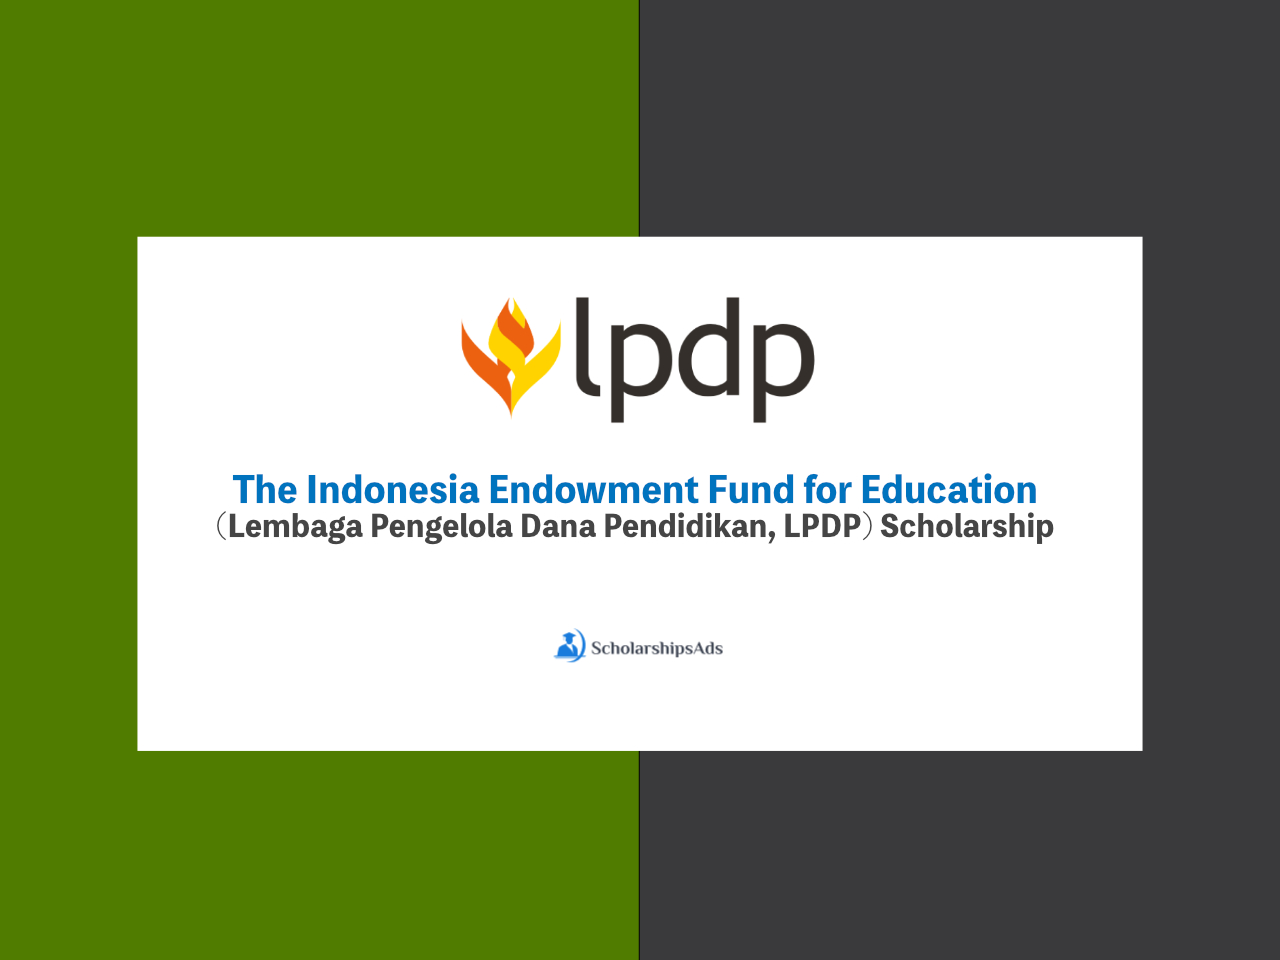 The Indonesia Endowment Fund for Education (Lembaga Pengelola Dana Pendidikan, LPDP) Scholarship